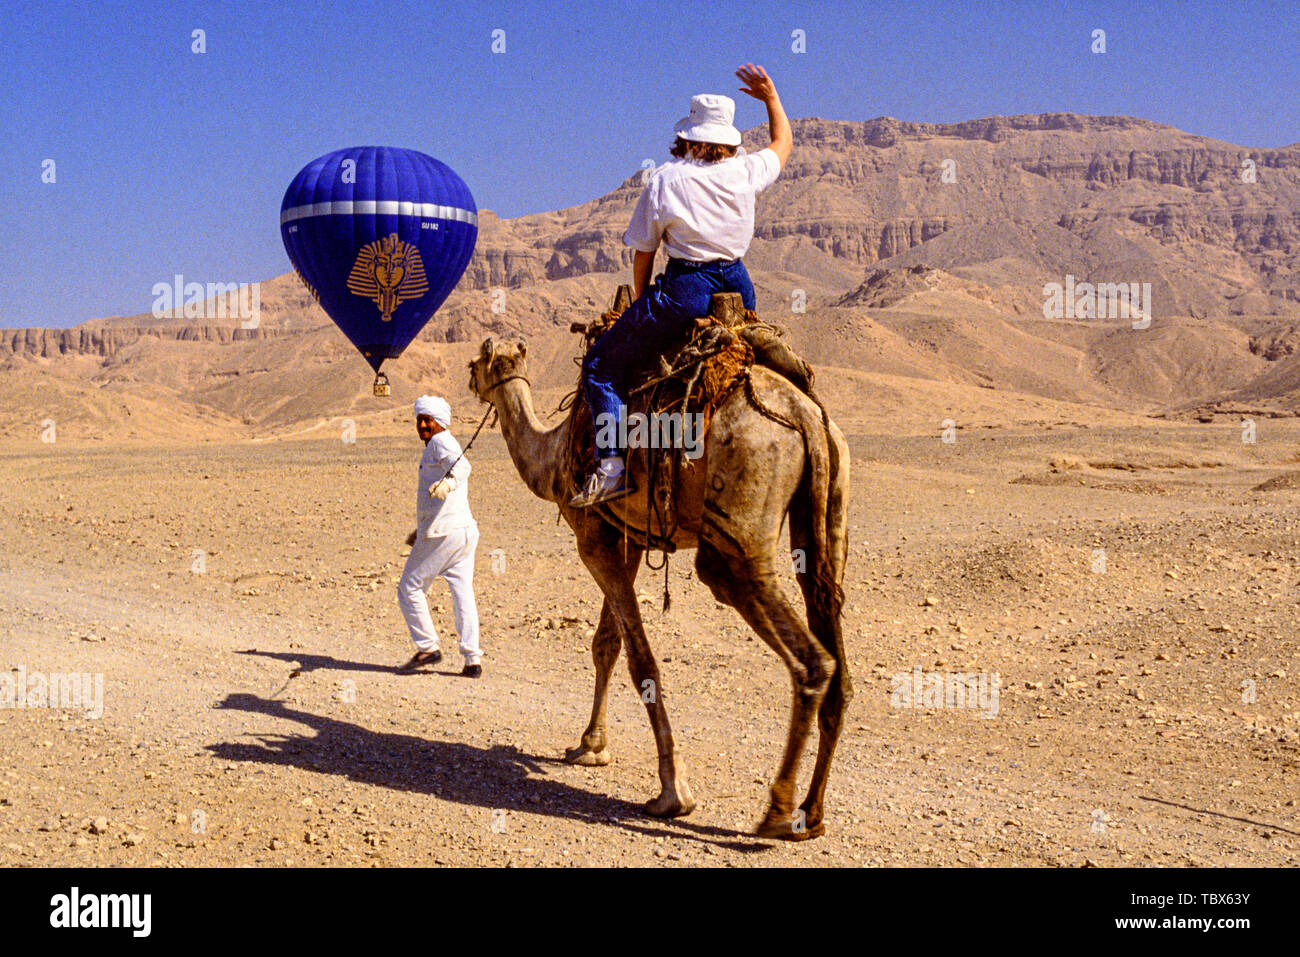 Foto: © Simon Grosset. Ballonfahrten über das Tal der Könige, Luxor, Ägypten. Ein Tourist folgt den Ballon auf Kamelen. Archiv: Bild digi Stockfoto